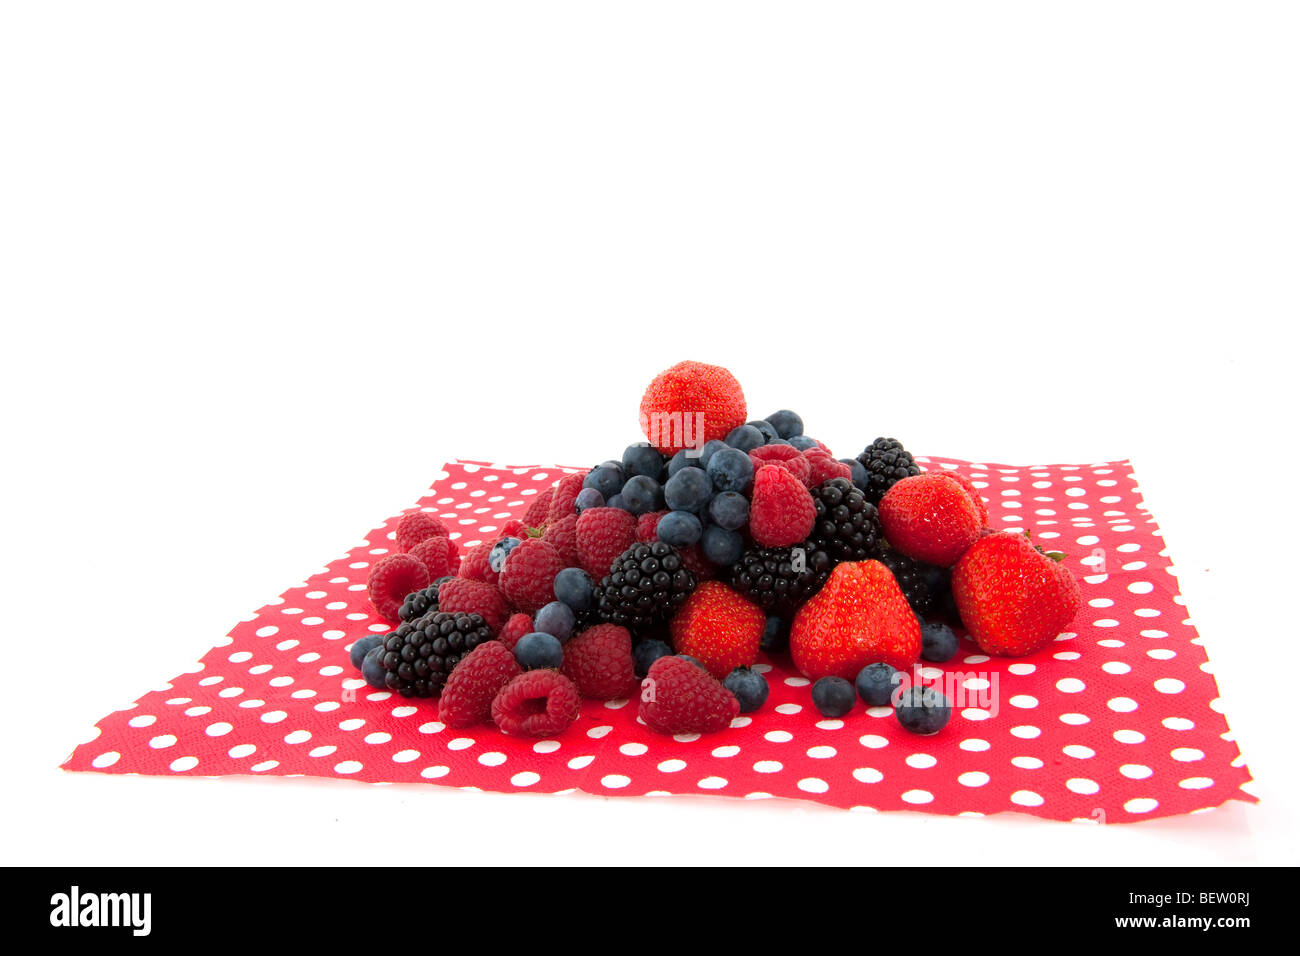 Vielfalt Früchte auf einer Serviette Sprenkel Stockfoto